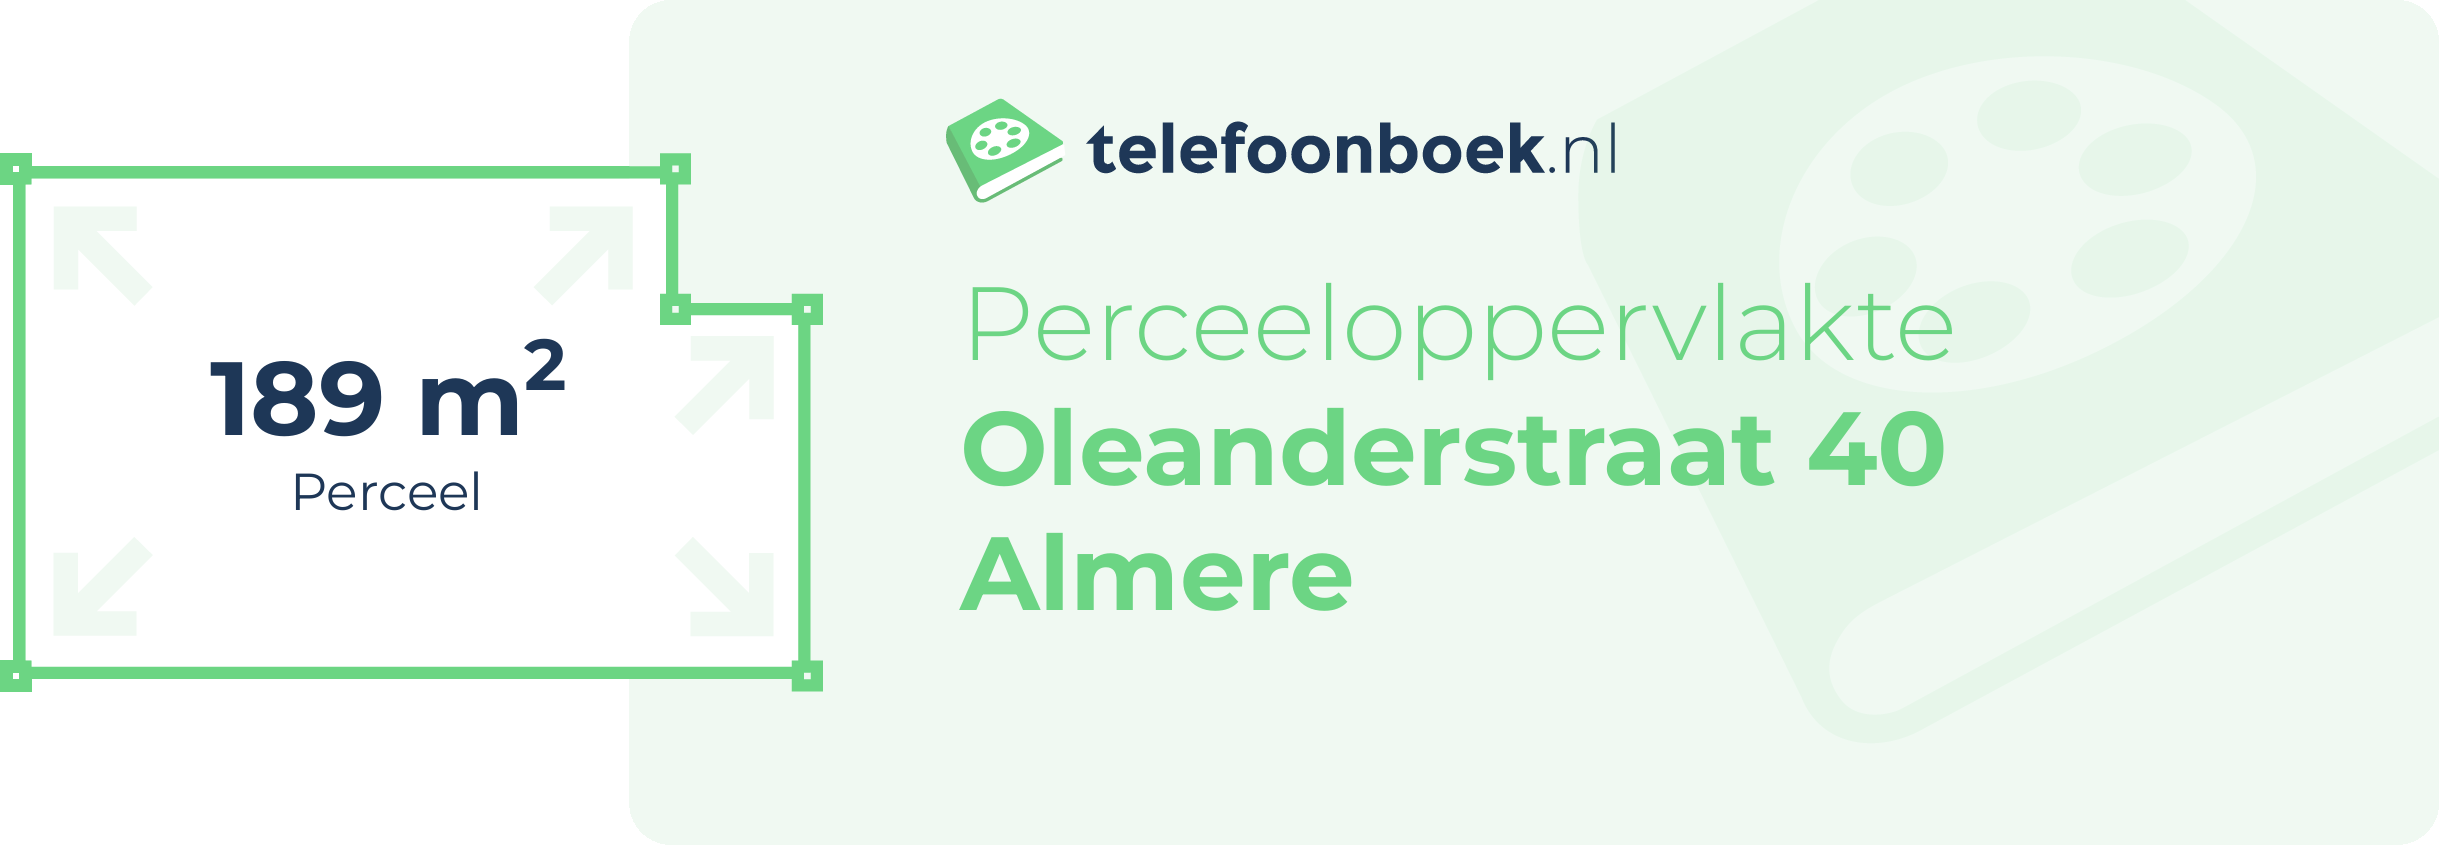 Perceeloppervlakte Oleanderstraat 40 Almere